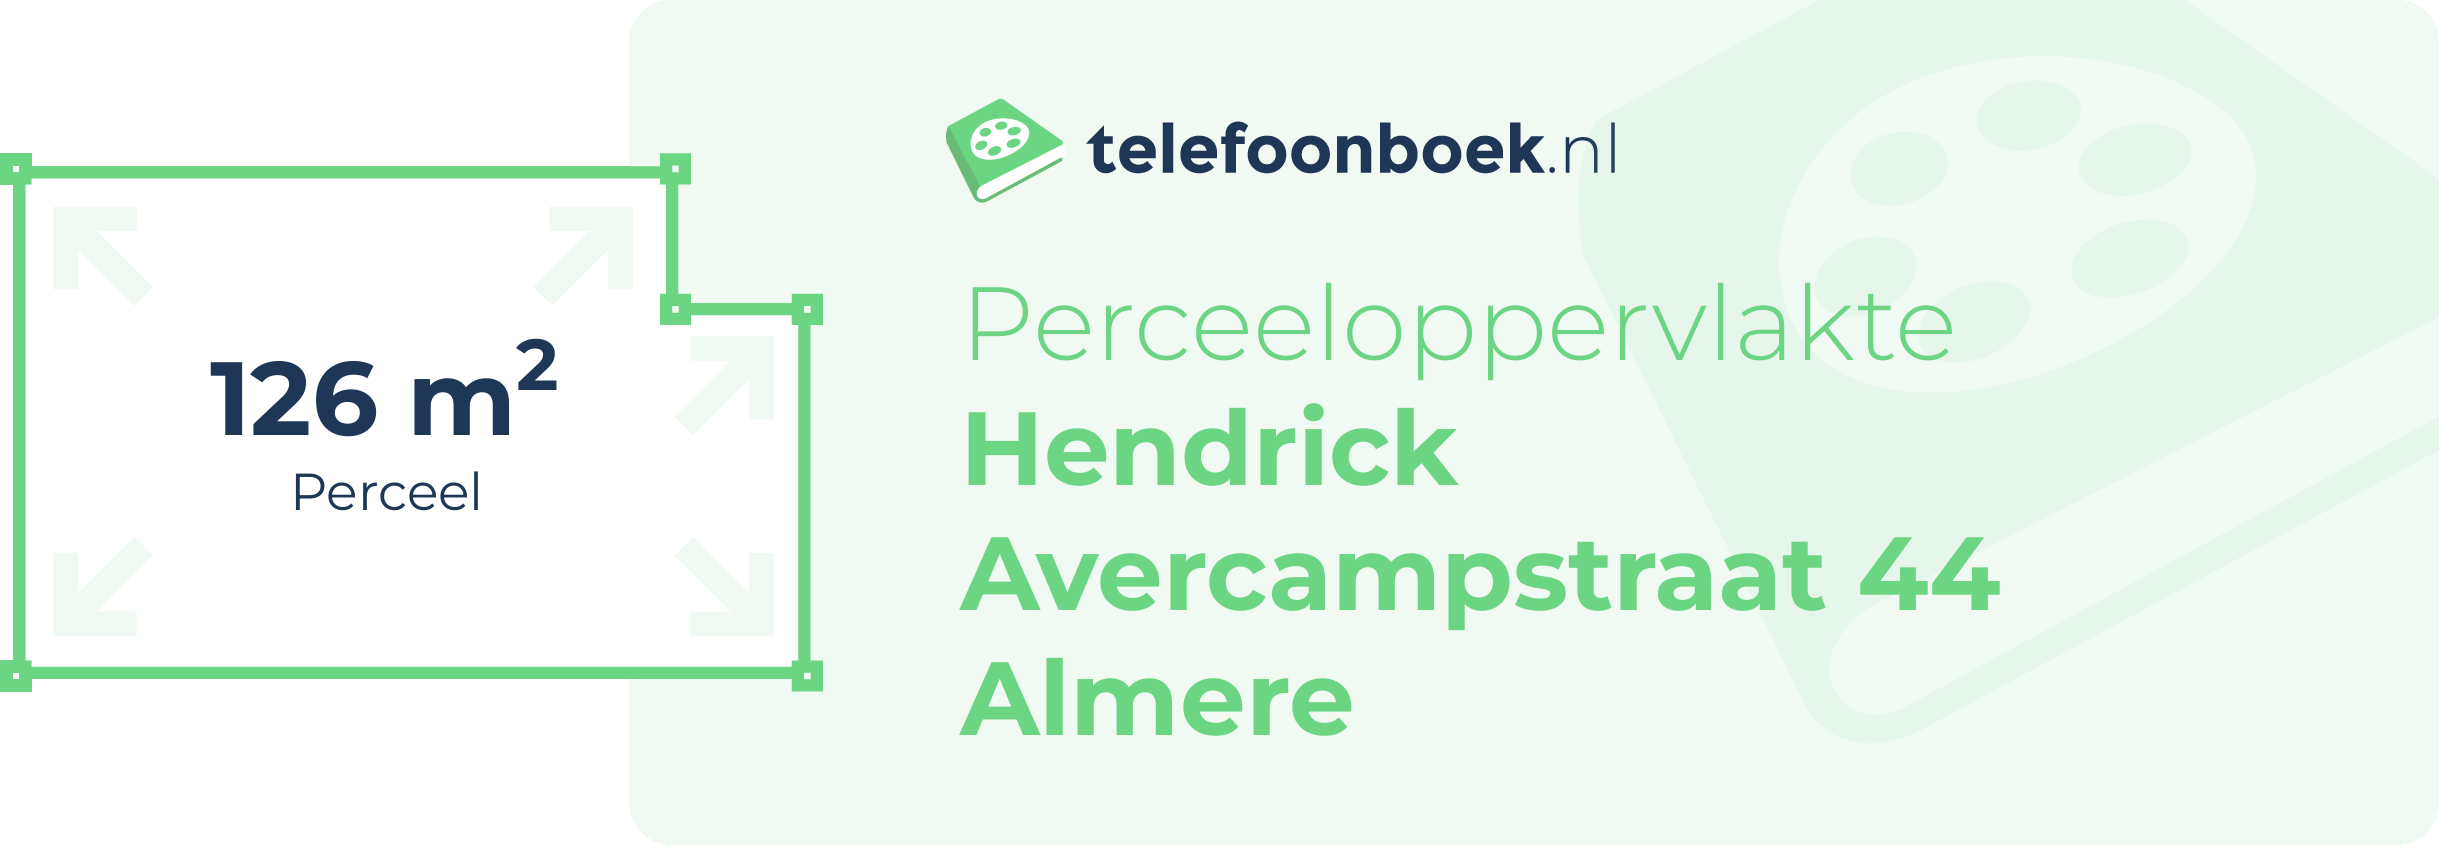 Perceeloppervlakte Hendrick Avercampstraat 44 Almere